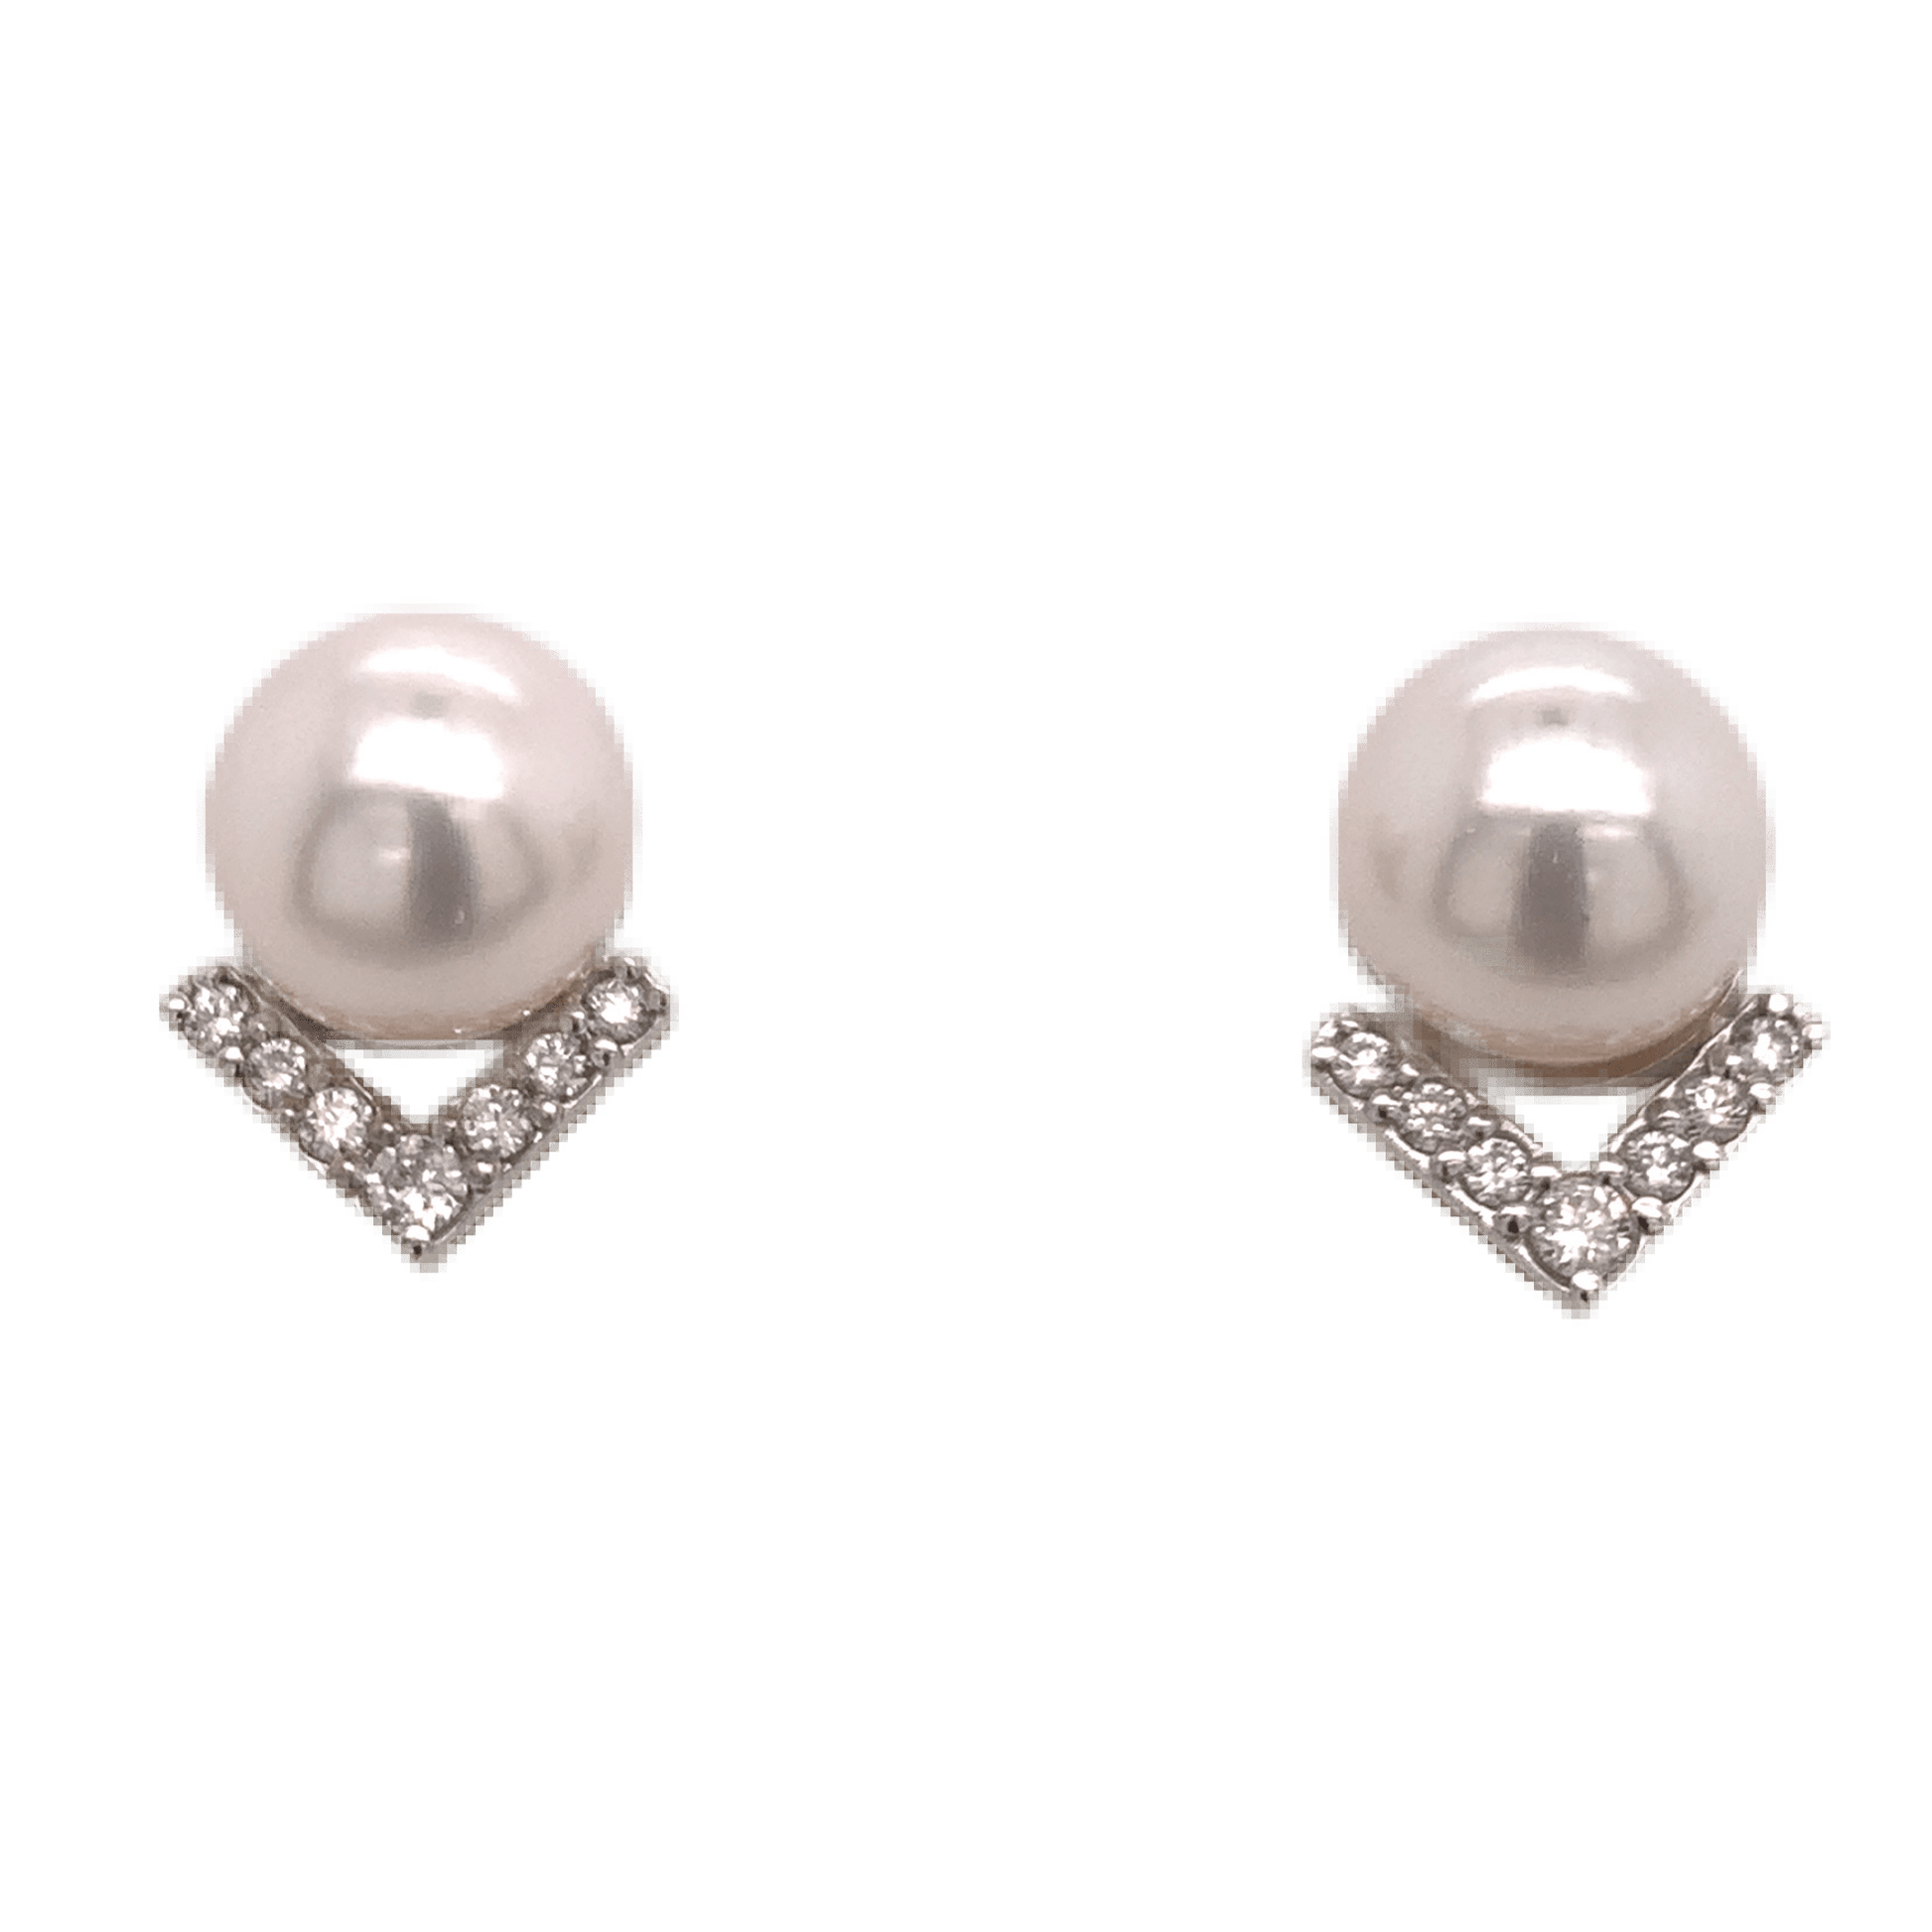 Akoya Pearl Diamond Earrings 14k Gold 9.5 mm 0.45 CTW Certified $3,975 111899 - Certified Estate Jewelry